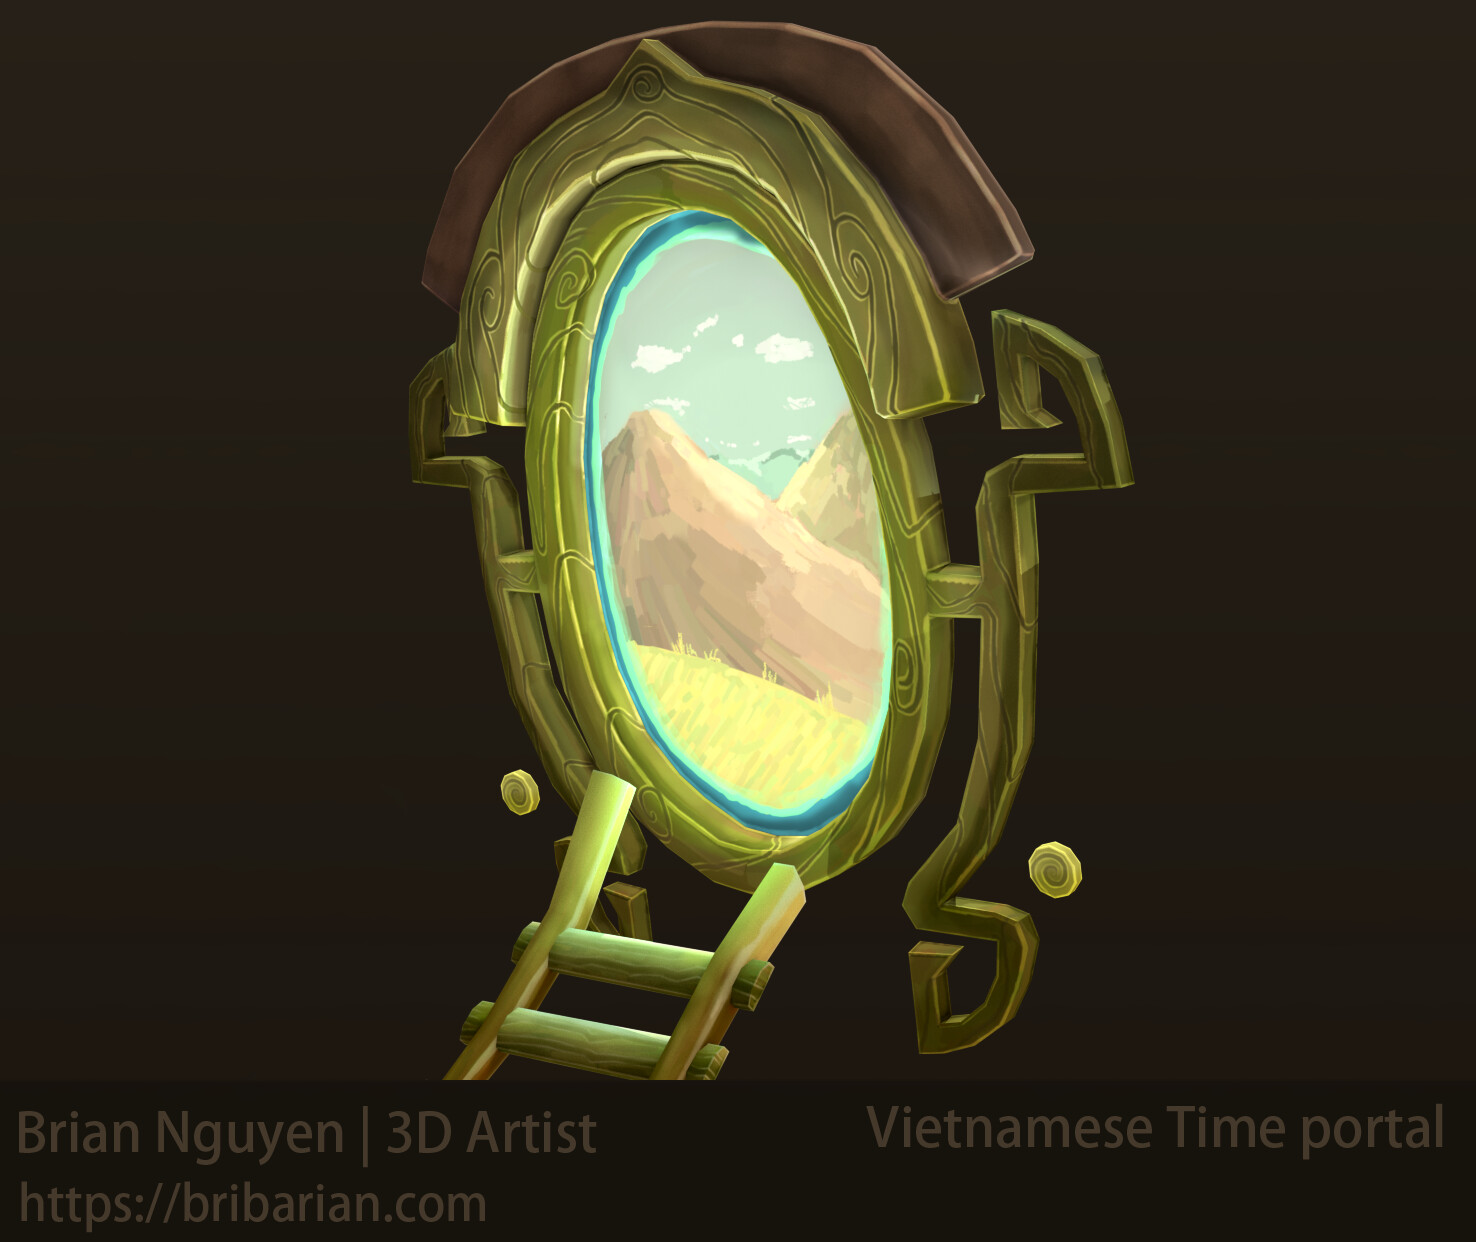 Vietnamese time portal